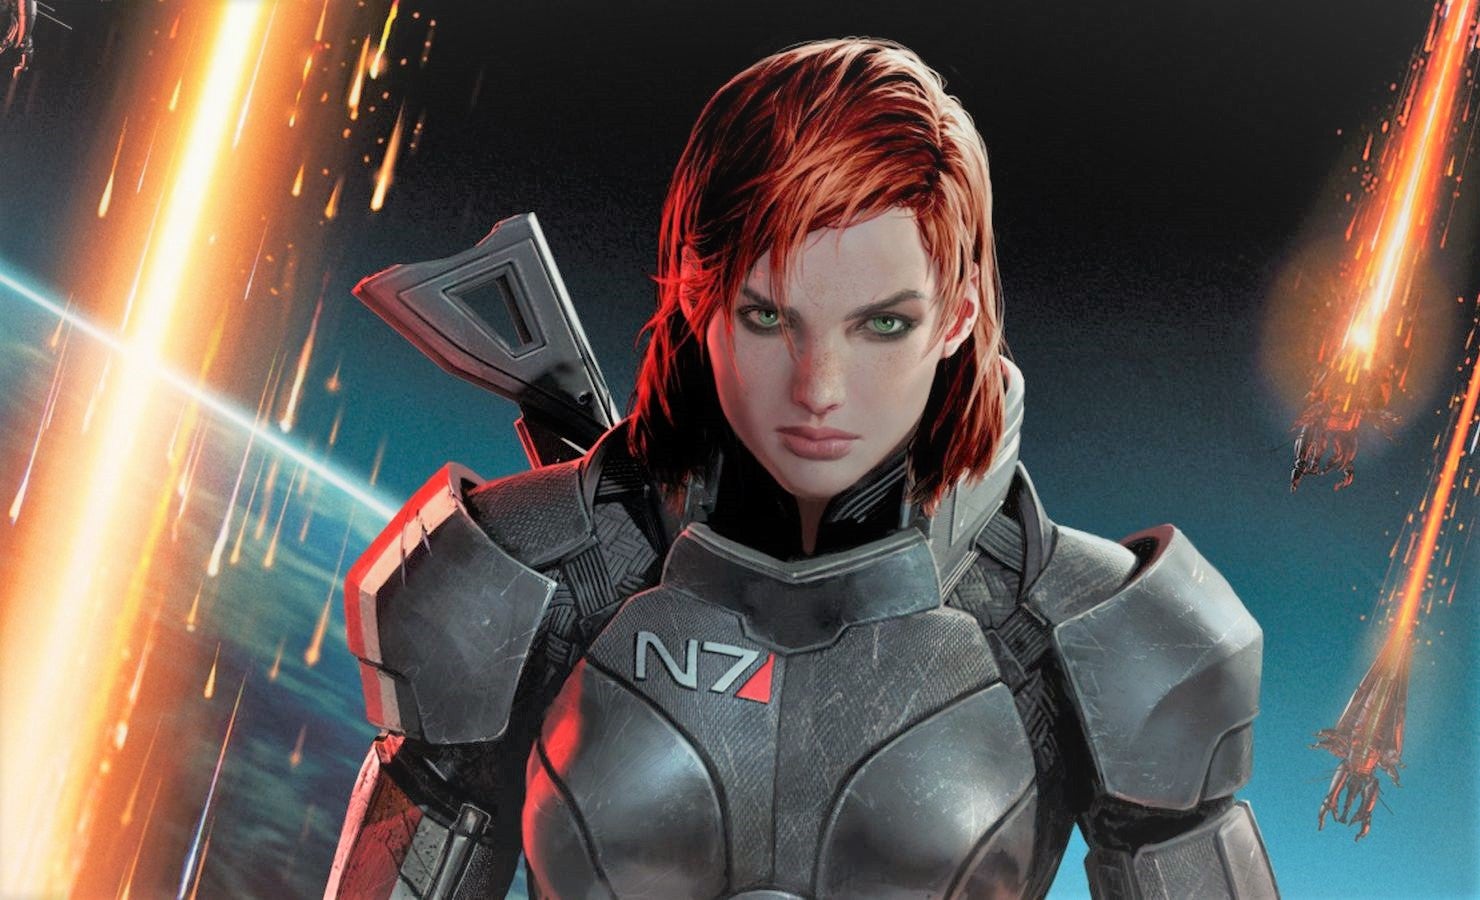 Obrazki dla EA pracuje nad odświeżoną trylogią Mass Effect - twierdzi amerykański dziennikarz